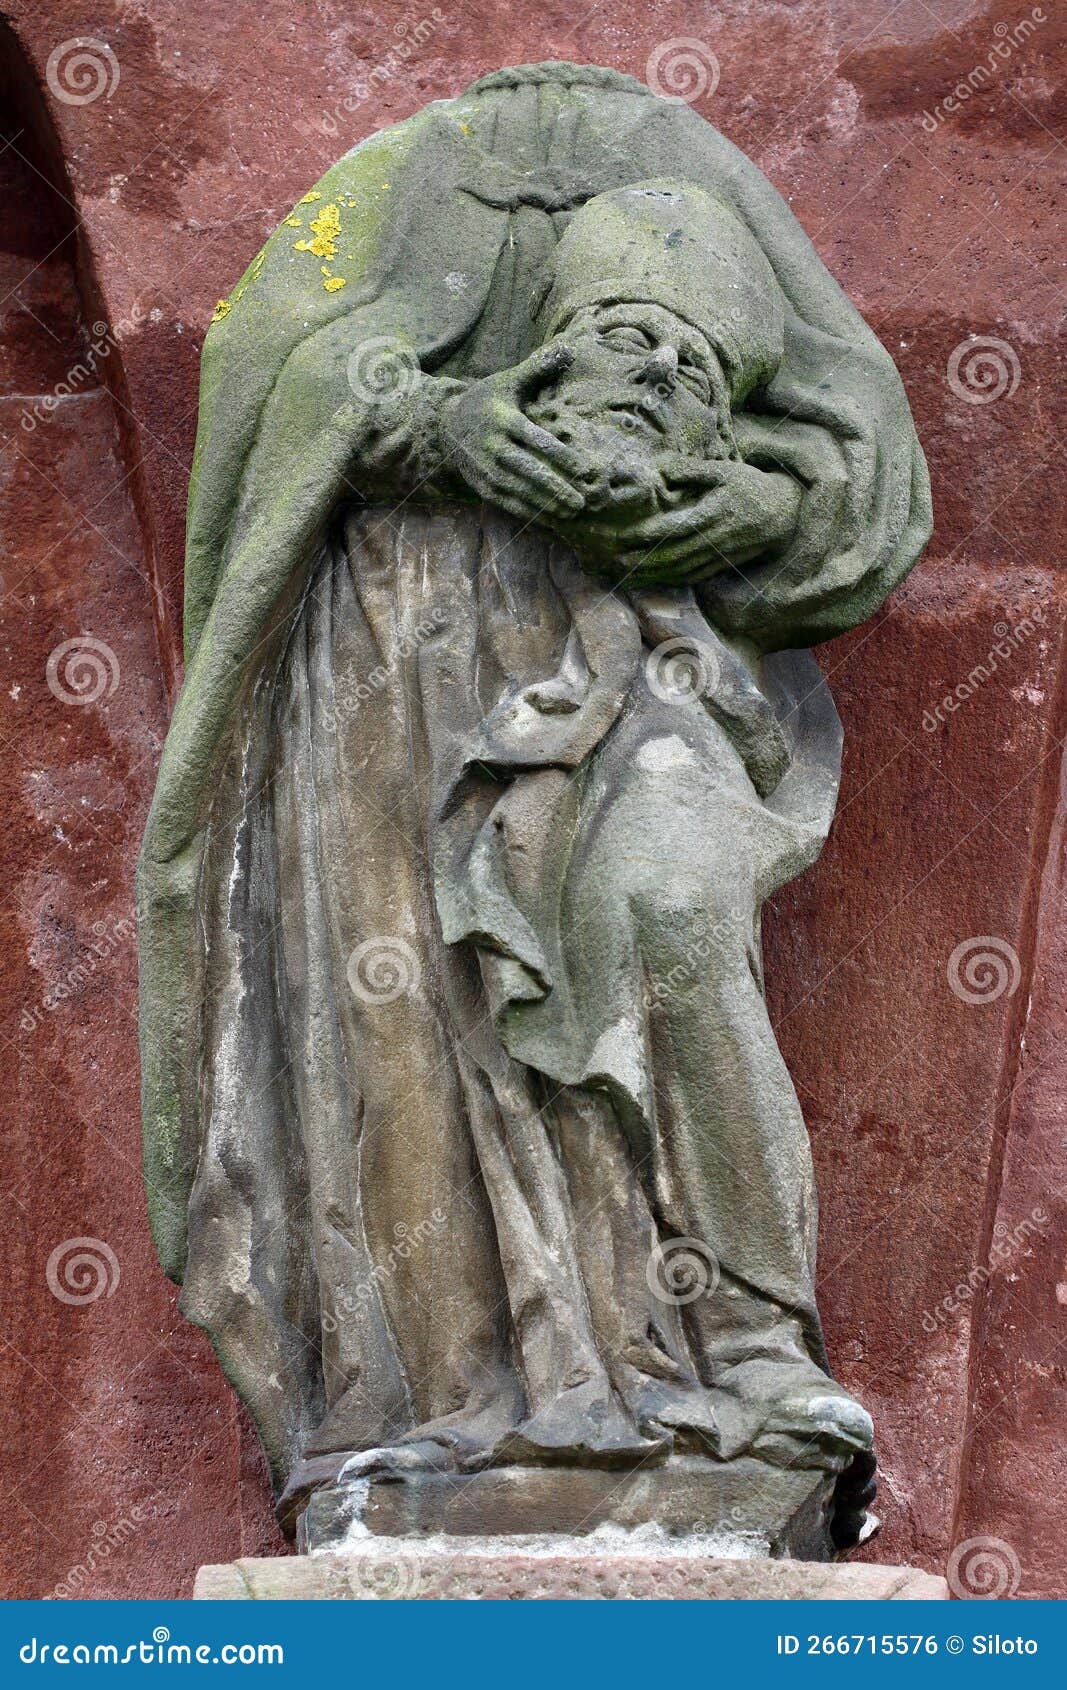 statue of the saint denis - dionysius